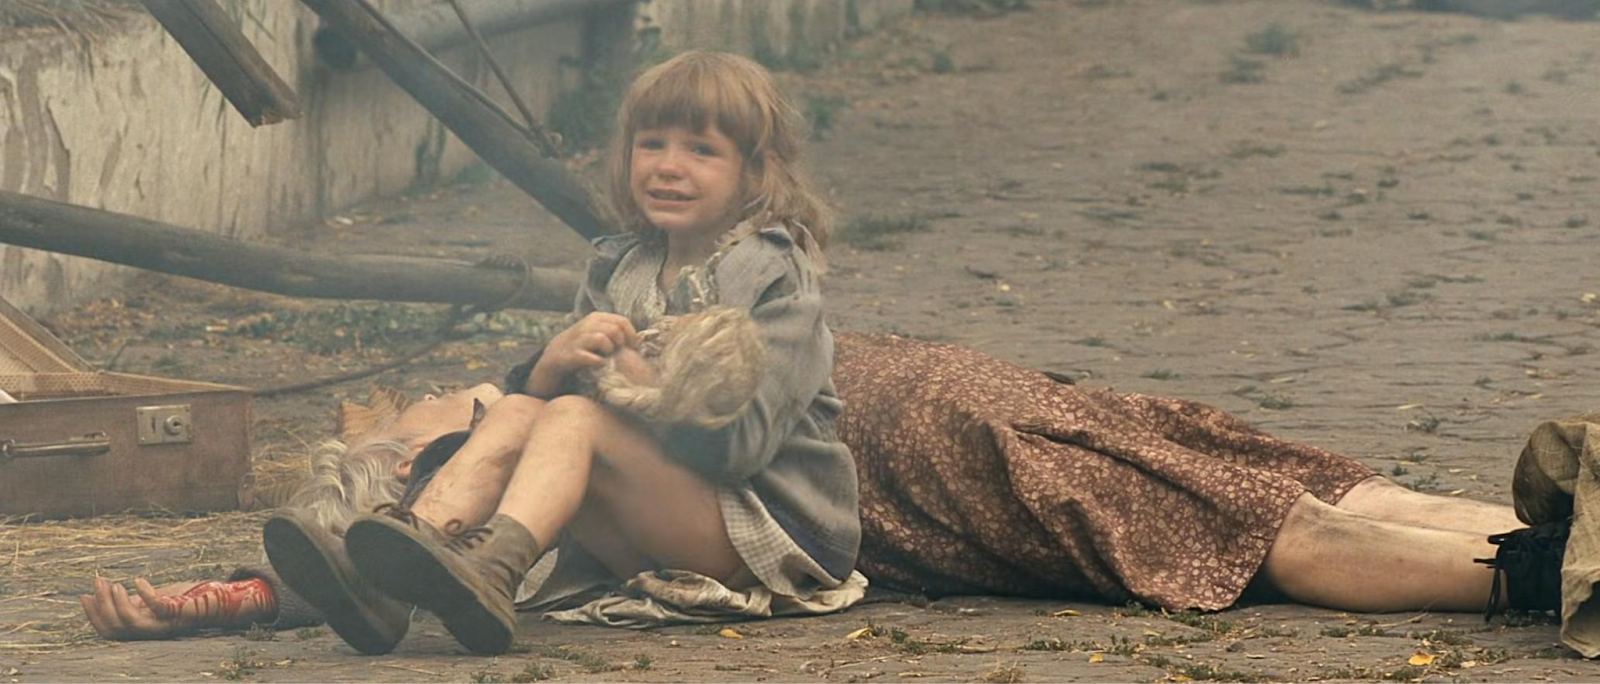 Criança chora no filme “A Resistência”